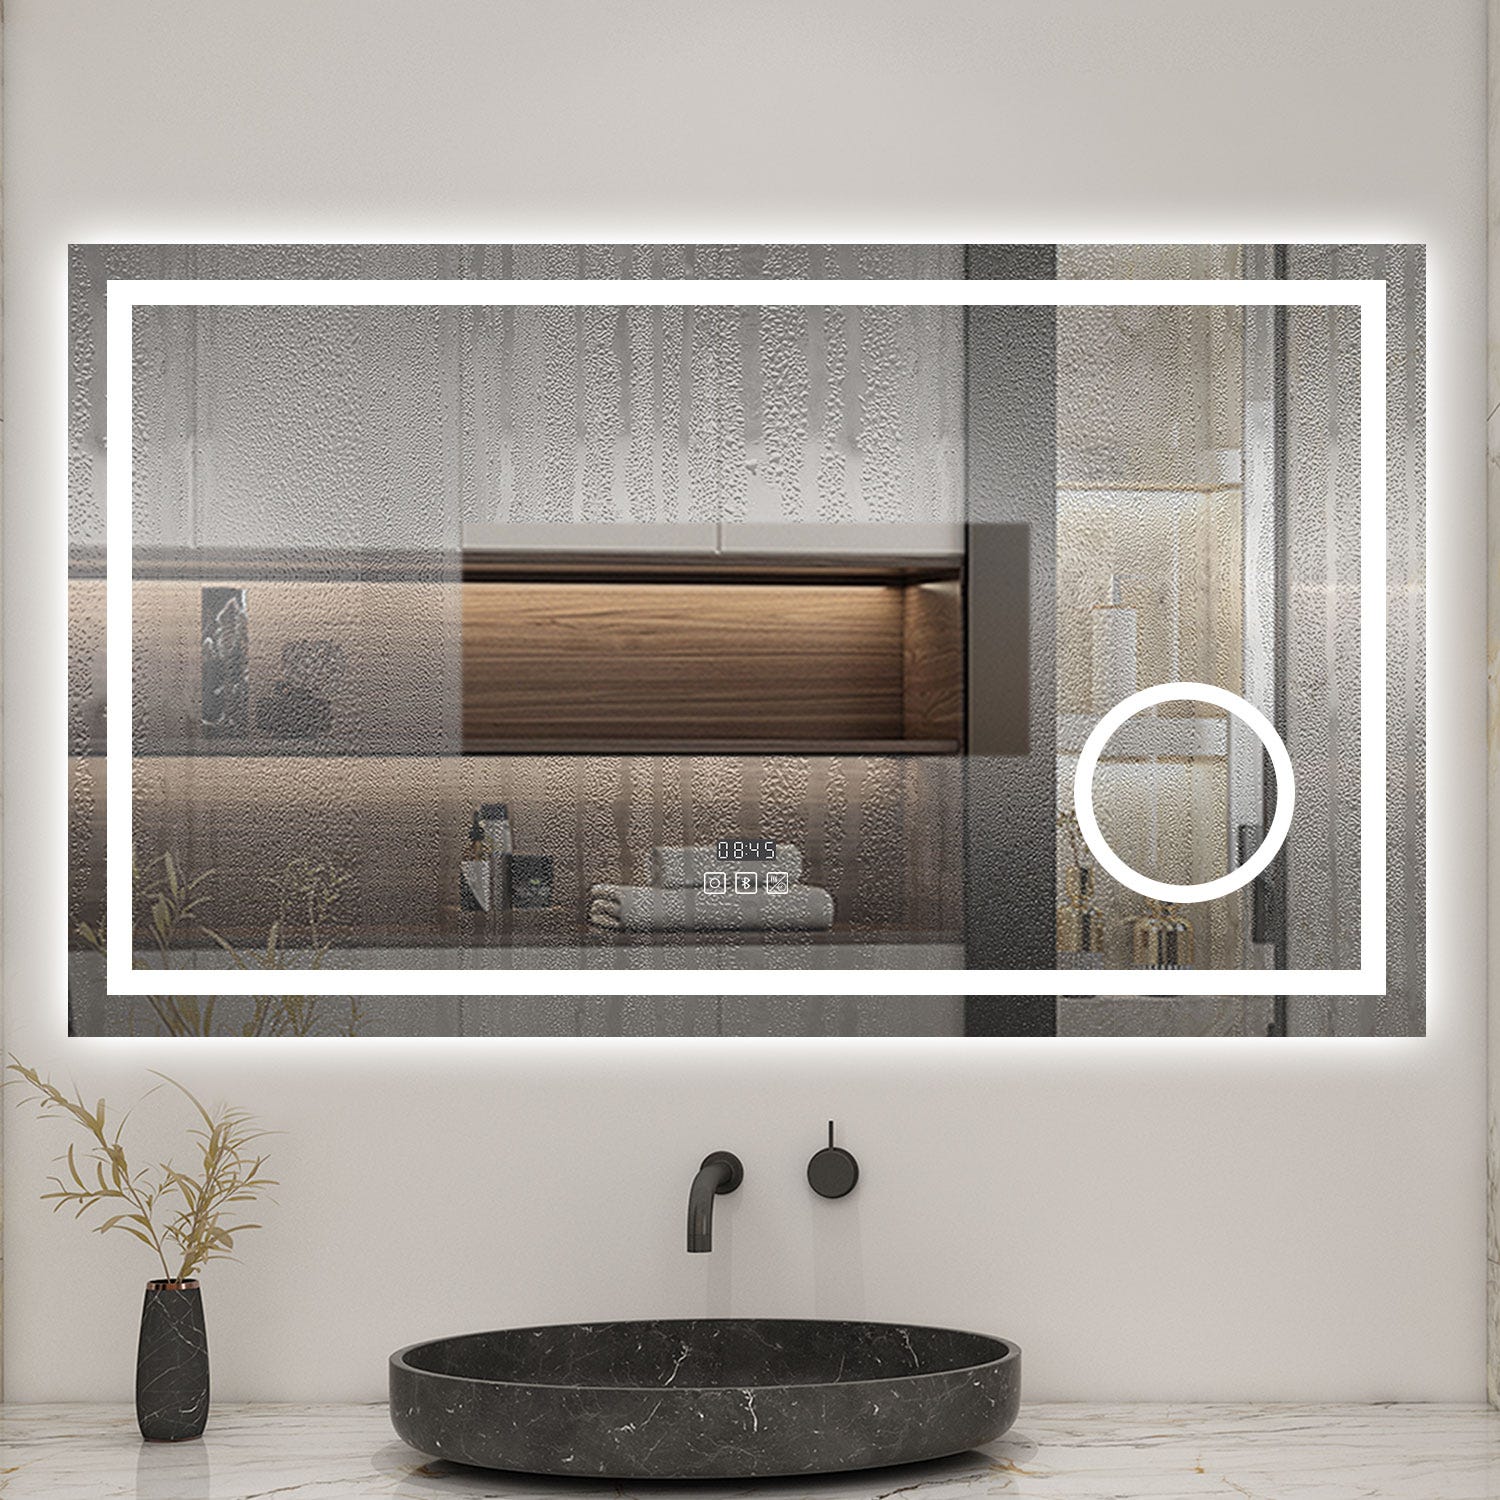 AICA Miroir lumineux Horloge + loupe + bluetooth + tricolore + anti-buée 160x80cm salle de bain dimmable,mémoire,tactile-led 1